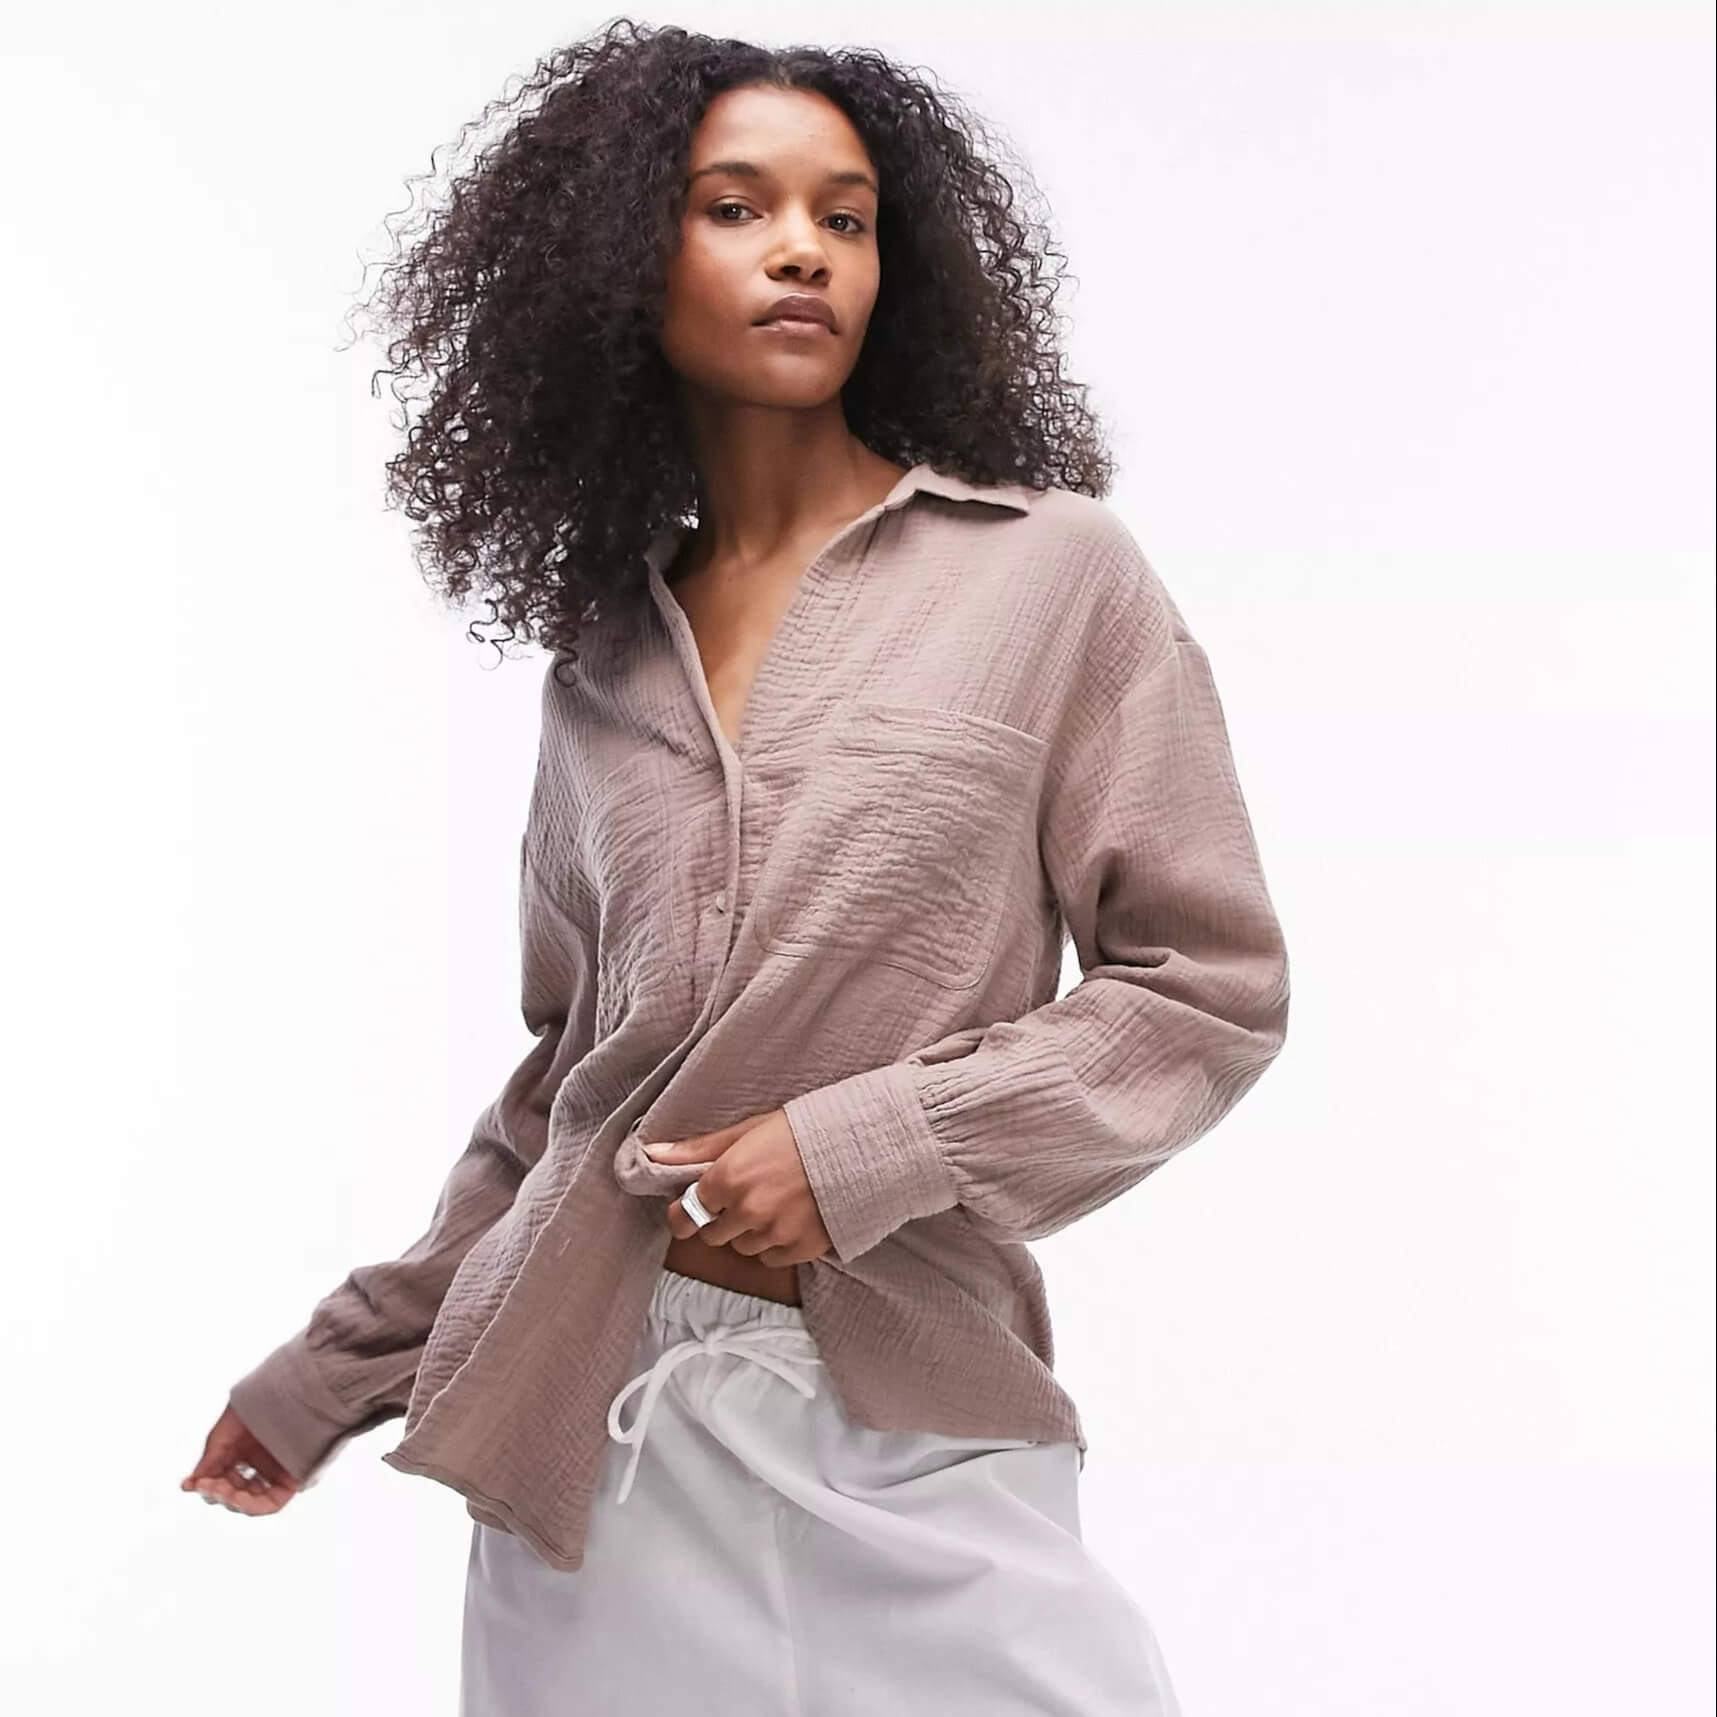 Рубашка Topshop Cotton Casual, бежевый рубашка женская с длинным рукавом отложным воротником и карманами